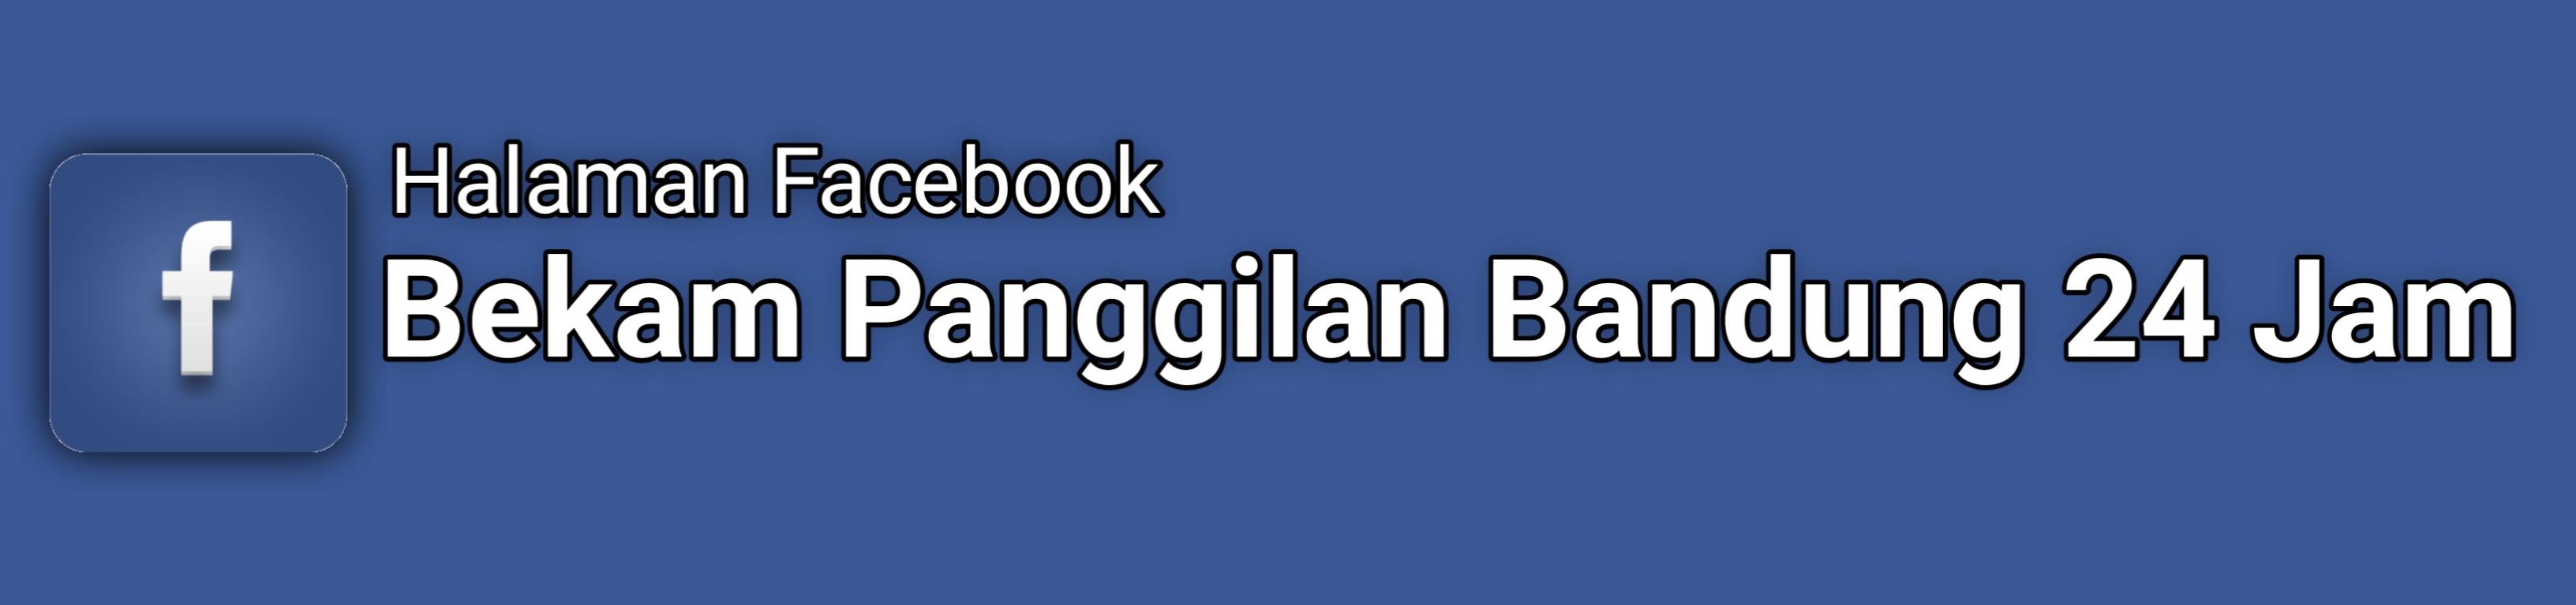 Halaman FB Bekam Panggilan Bandung